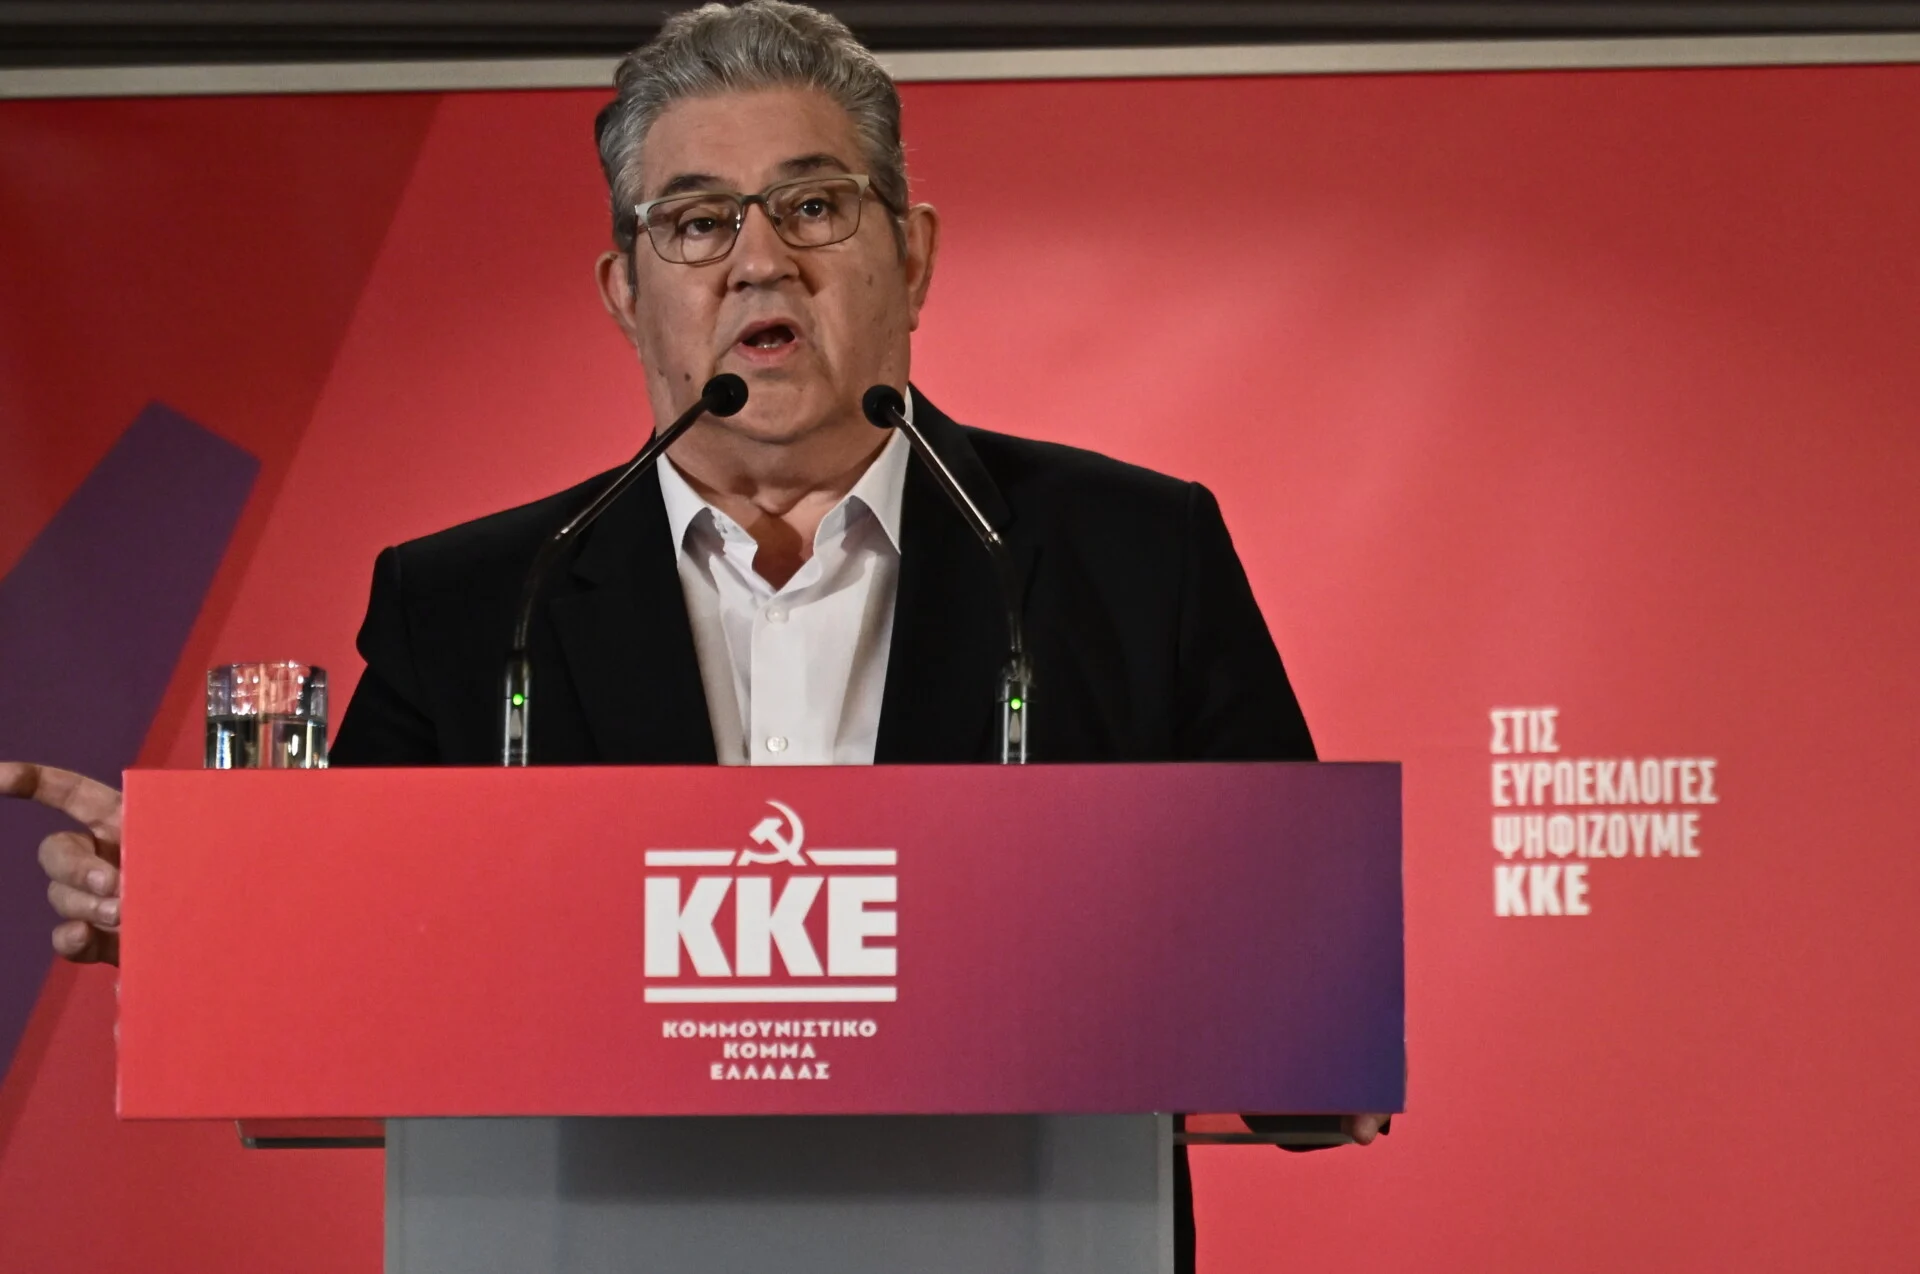 Το ΚΚΕ ανακοίνωσε  το ευρωψηφοδέλτιο με τις 42 υποψηφιότητες-Κουτσούμπας: “Έτσι εκφράζουμε τη γνήσια εργατική-λαϊκή αντιπολίτευση”